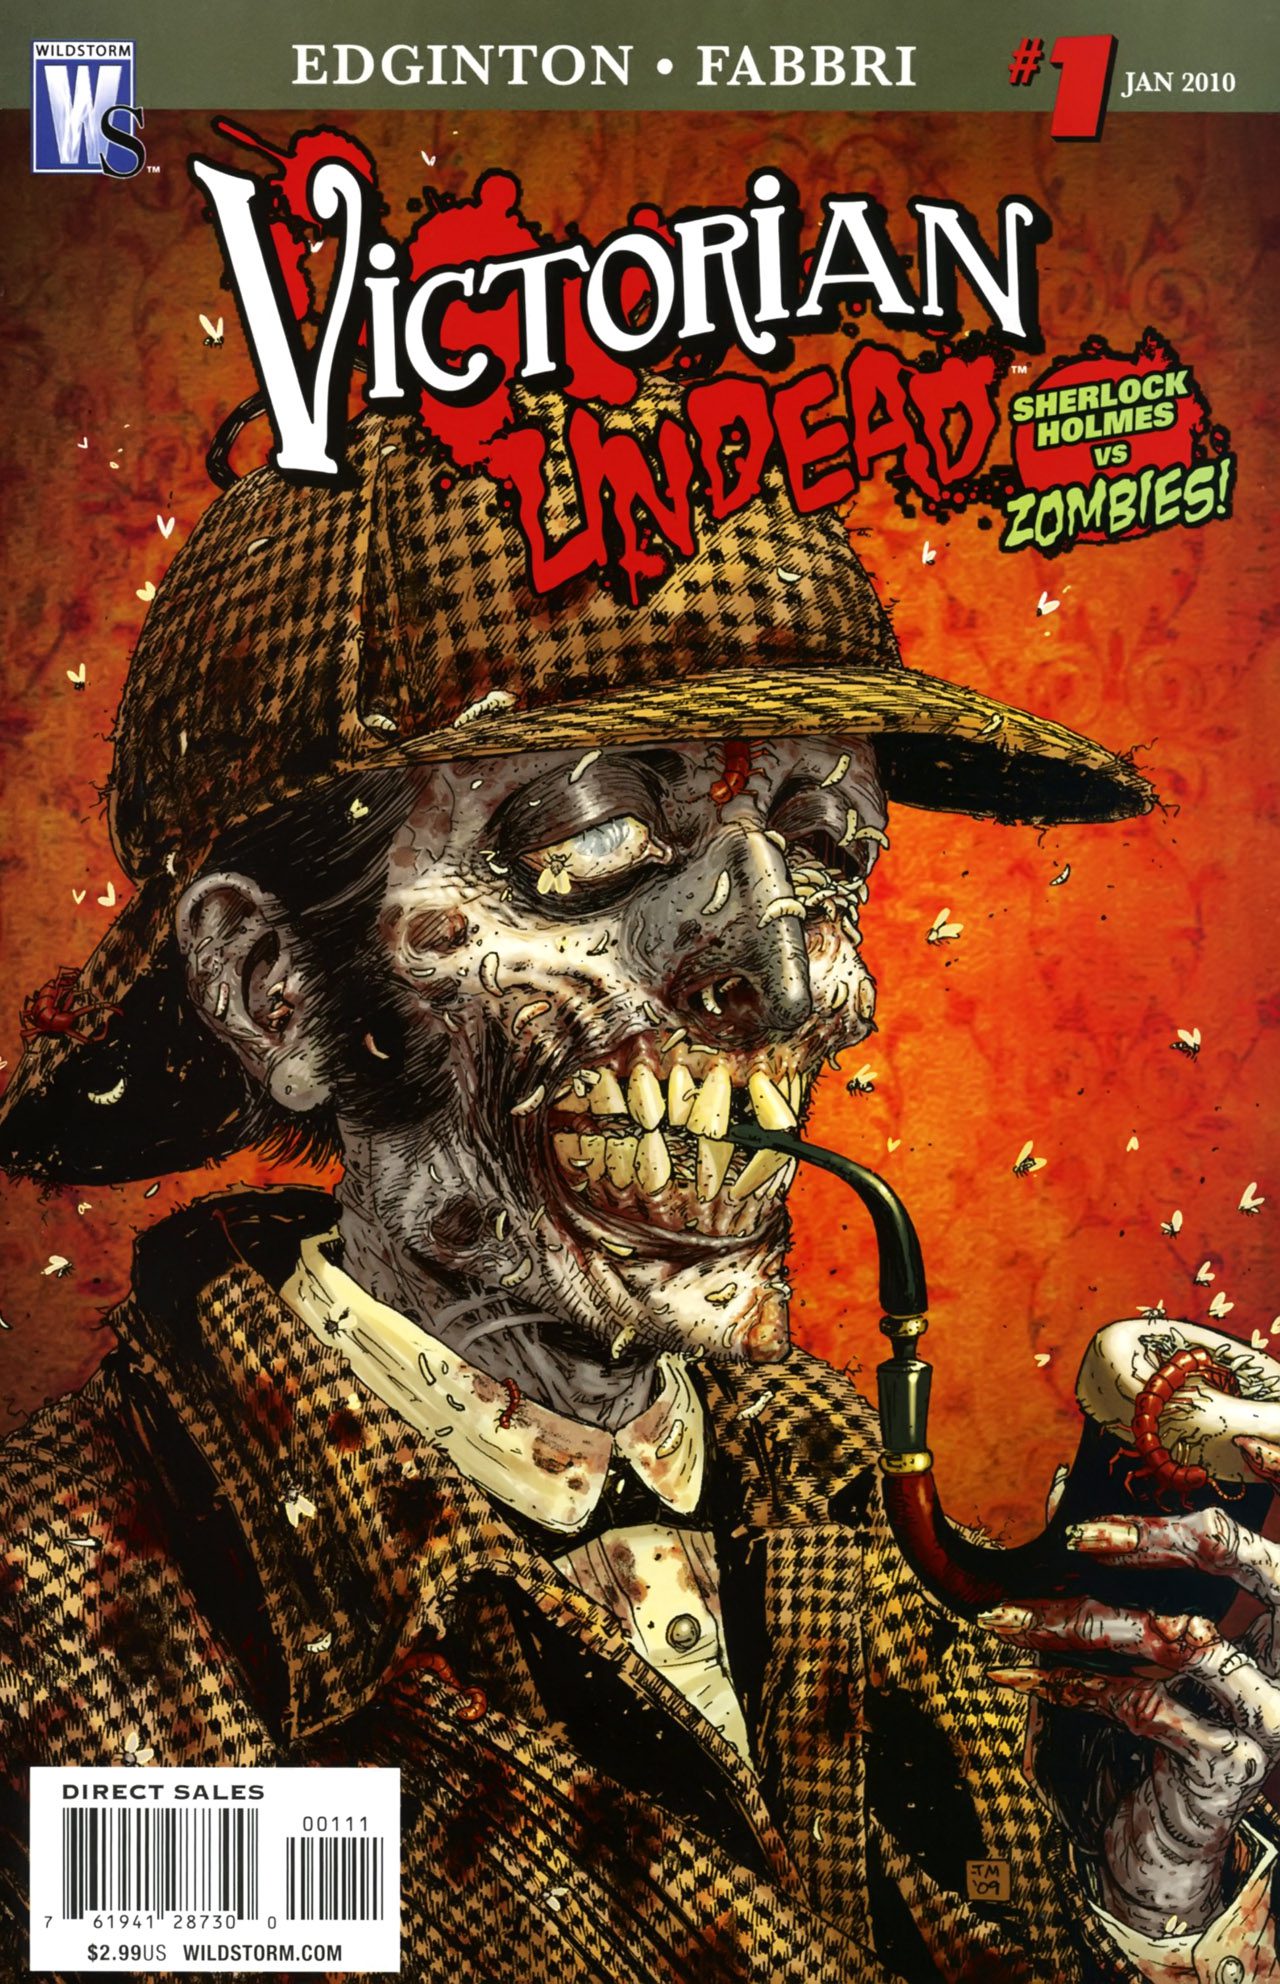 Comic completo Victorian Undead